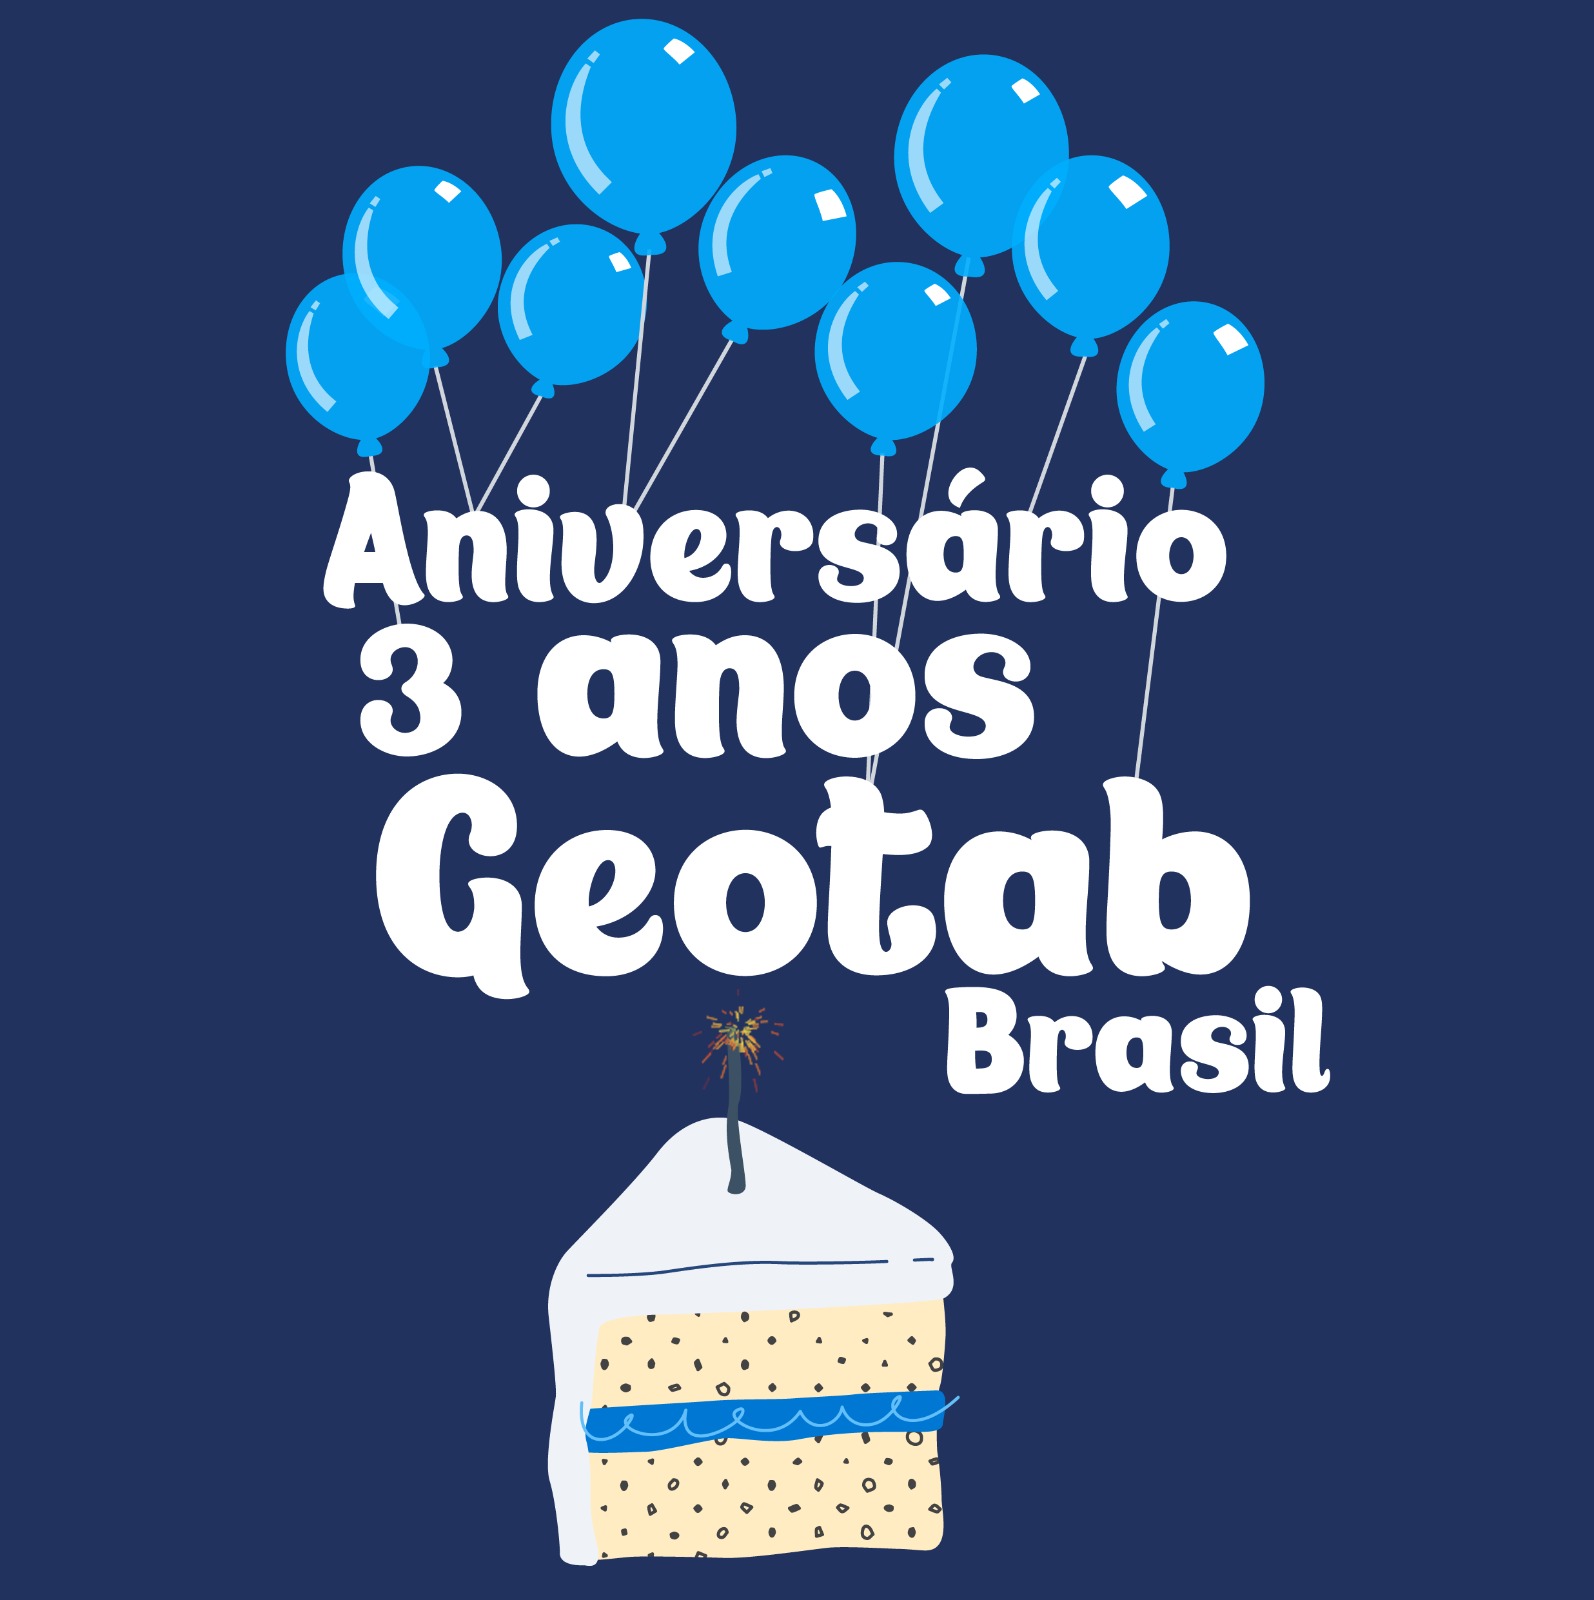 Imagem comemorativa pelo aniversario da Geotab com baloes e bolo